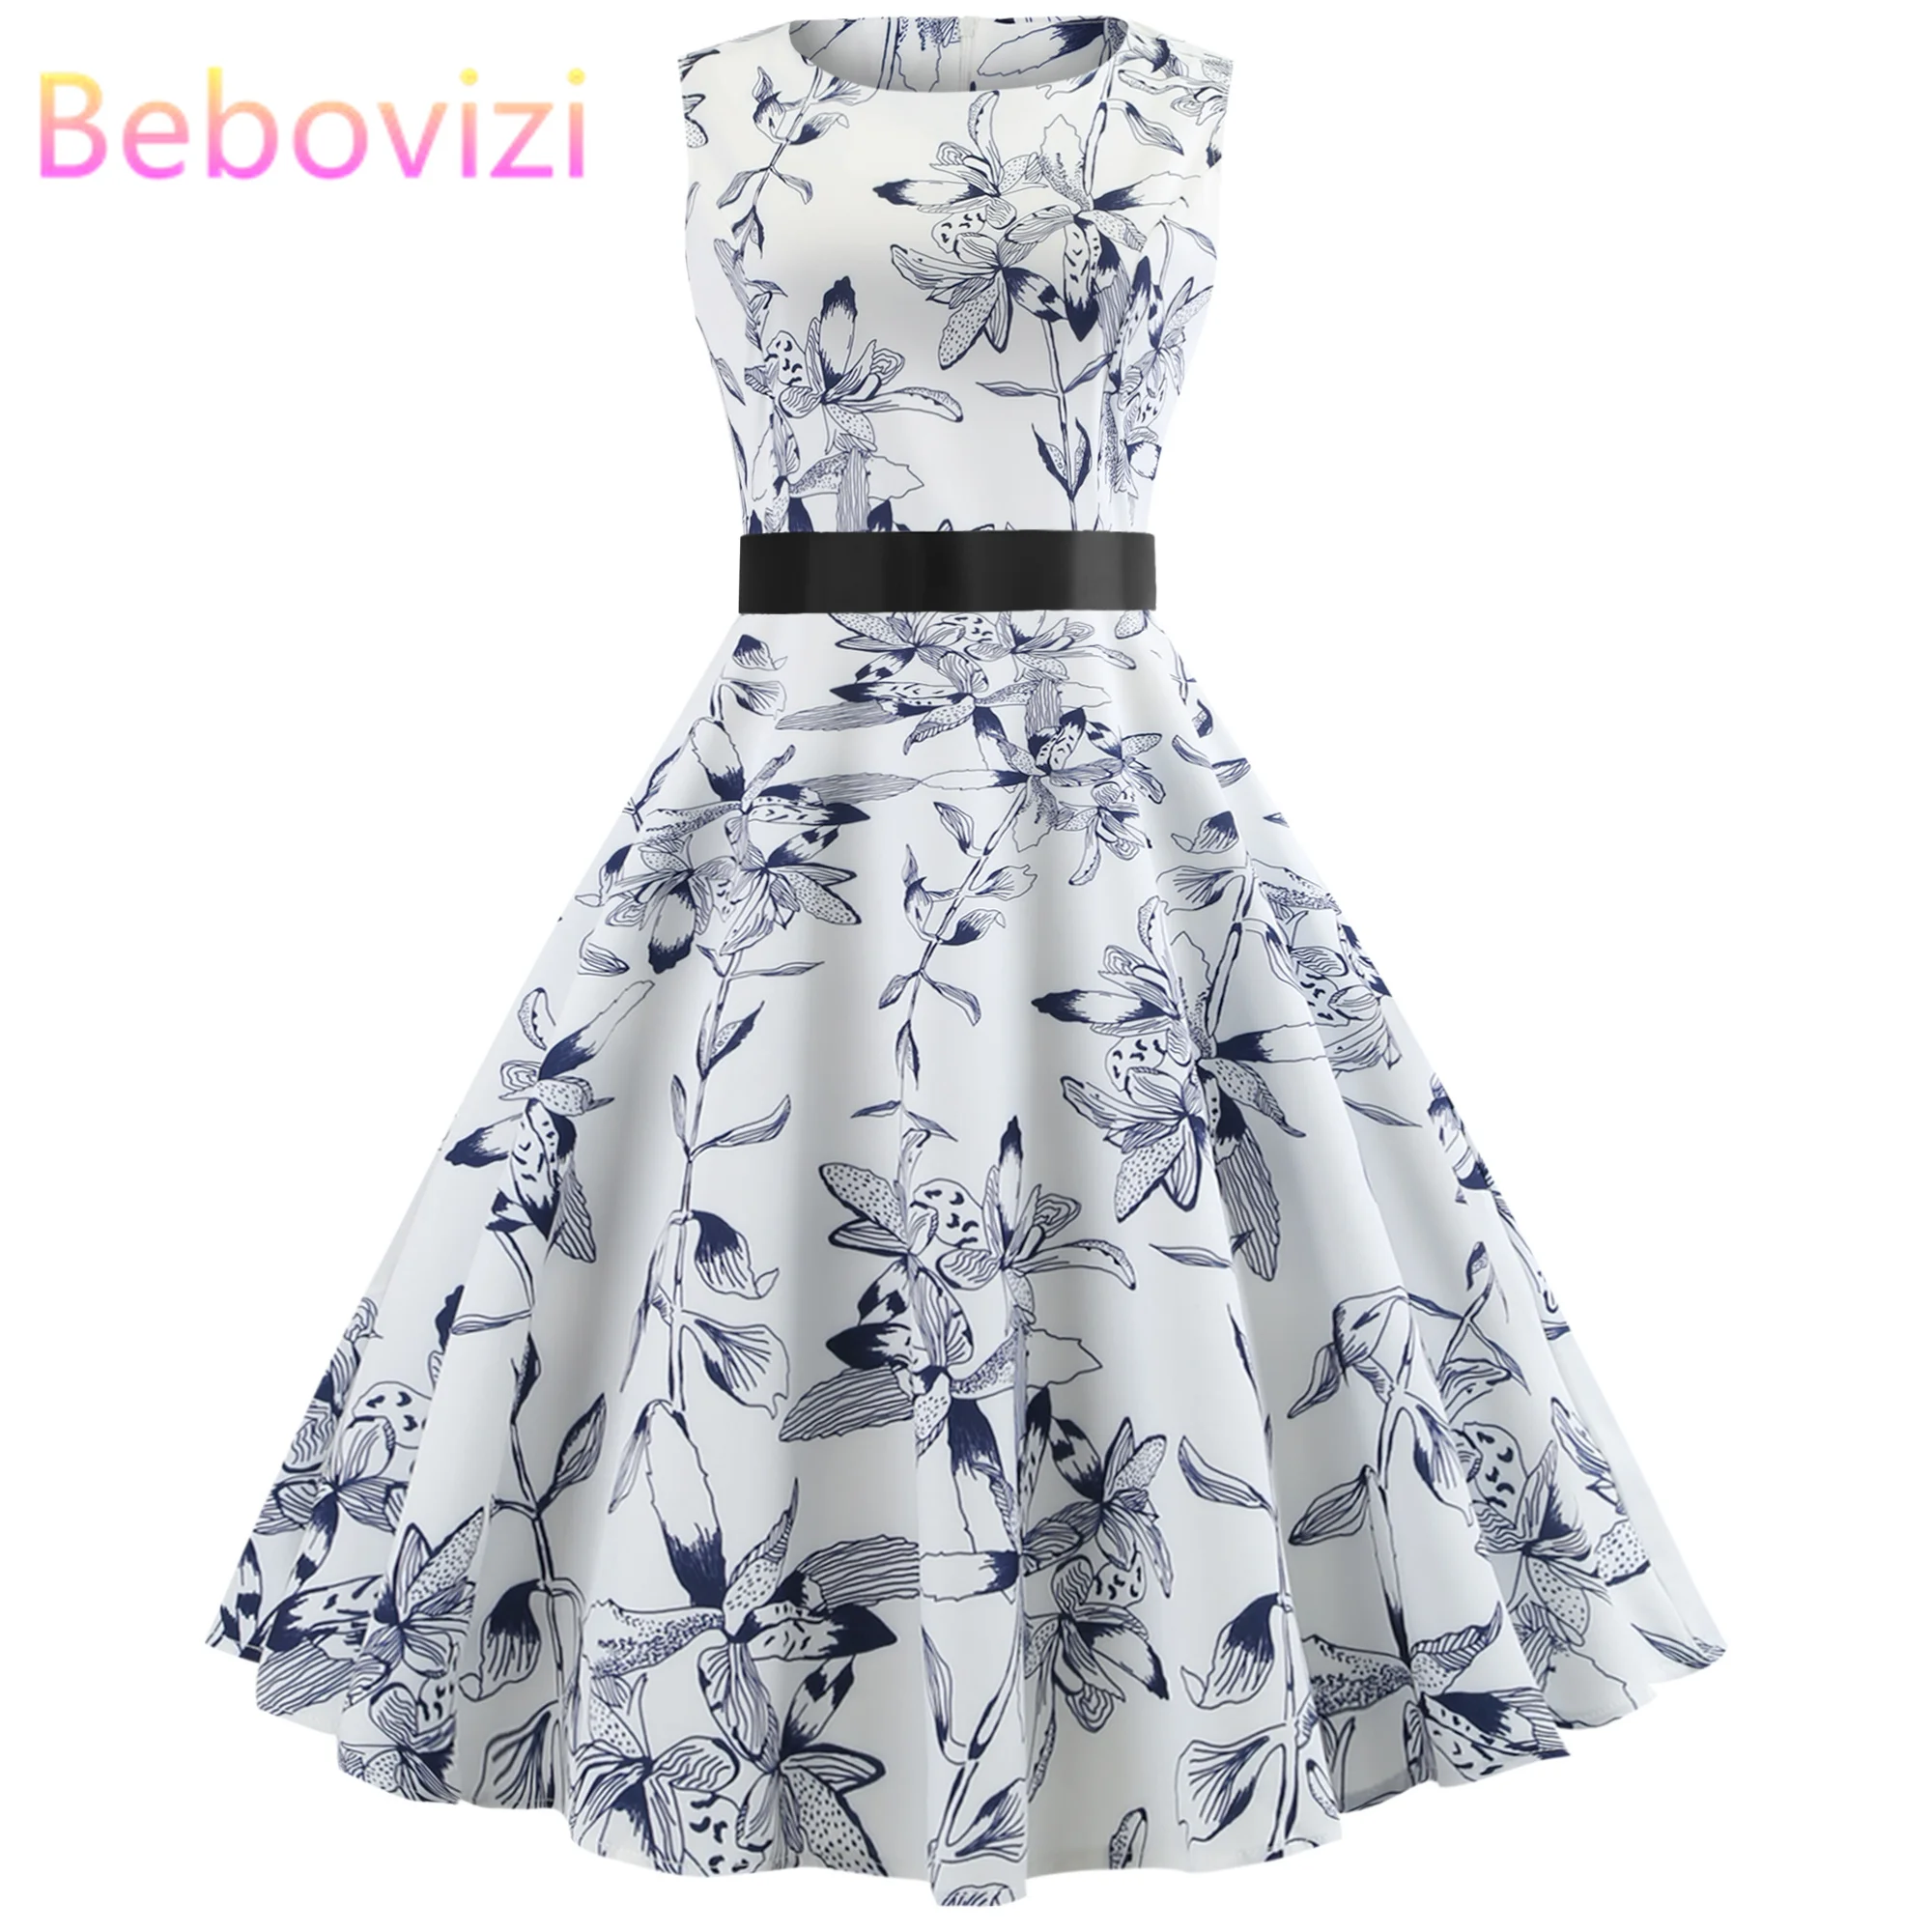 Bebovisi/модное женское винтажное платье года, белое летнее платье с цветочным принтом, Хепберн, 50 s, ретро вечерние платья без рукавов, Бандажное платье